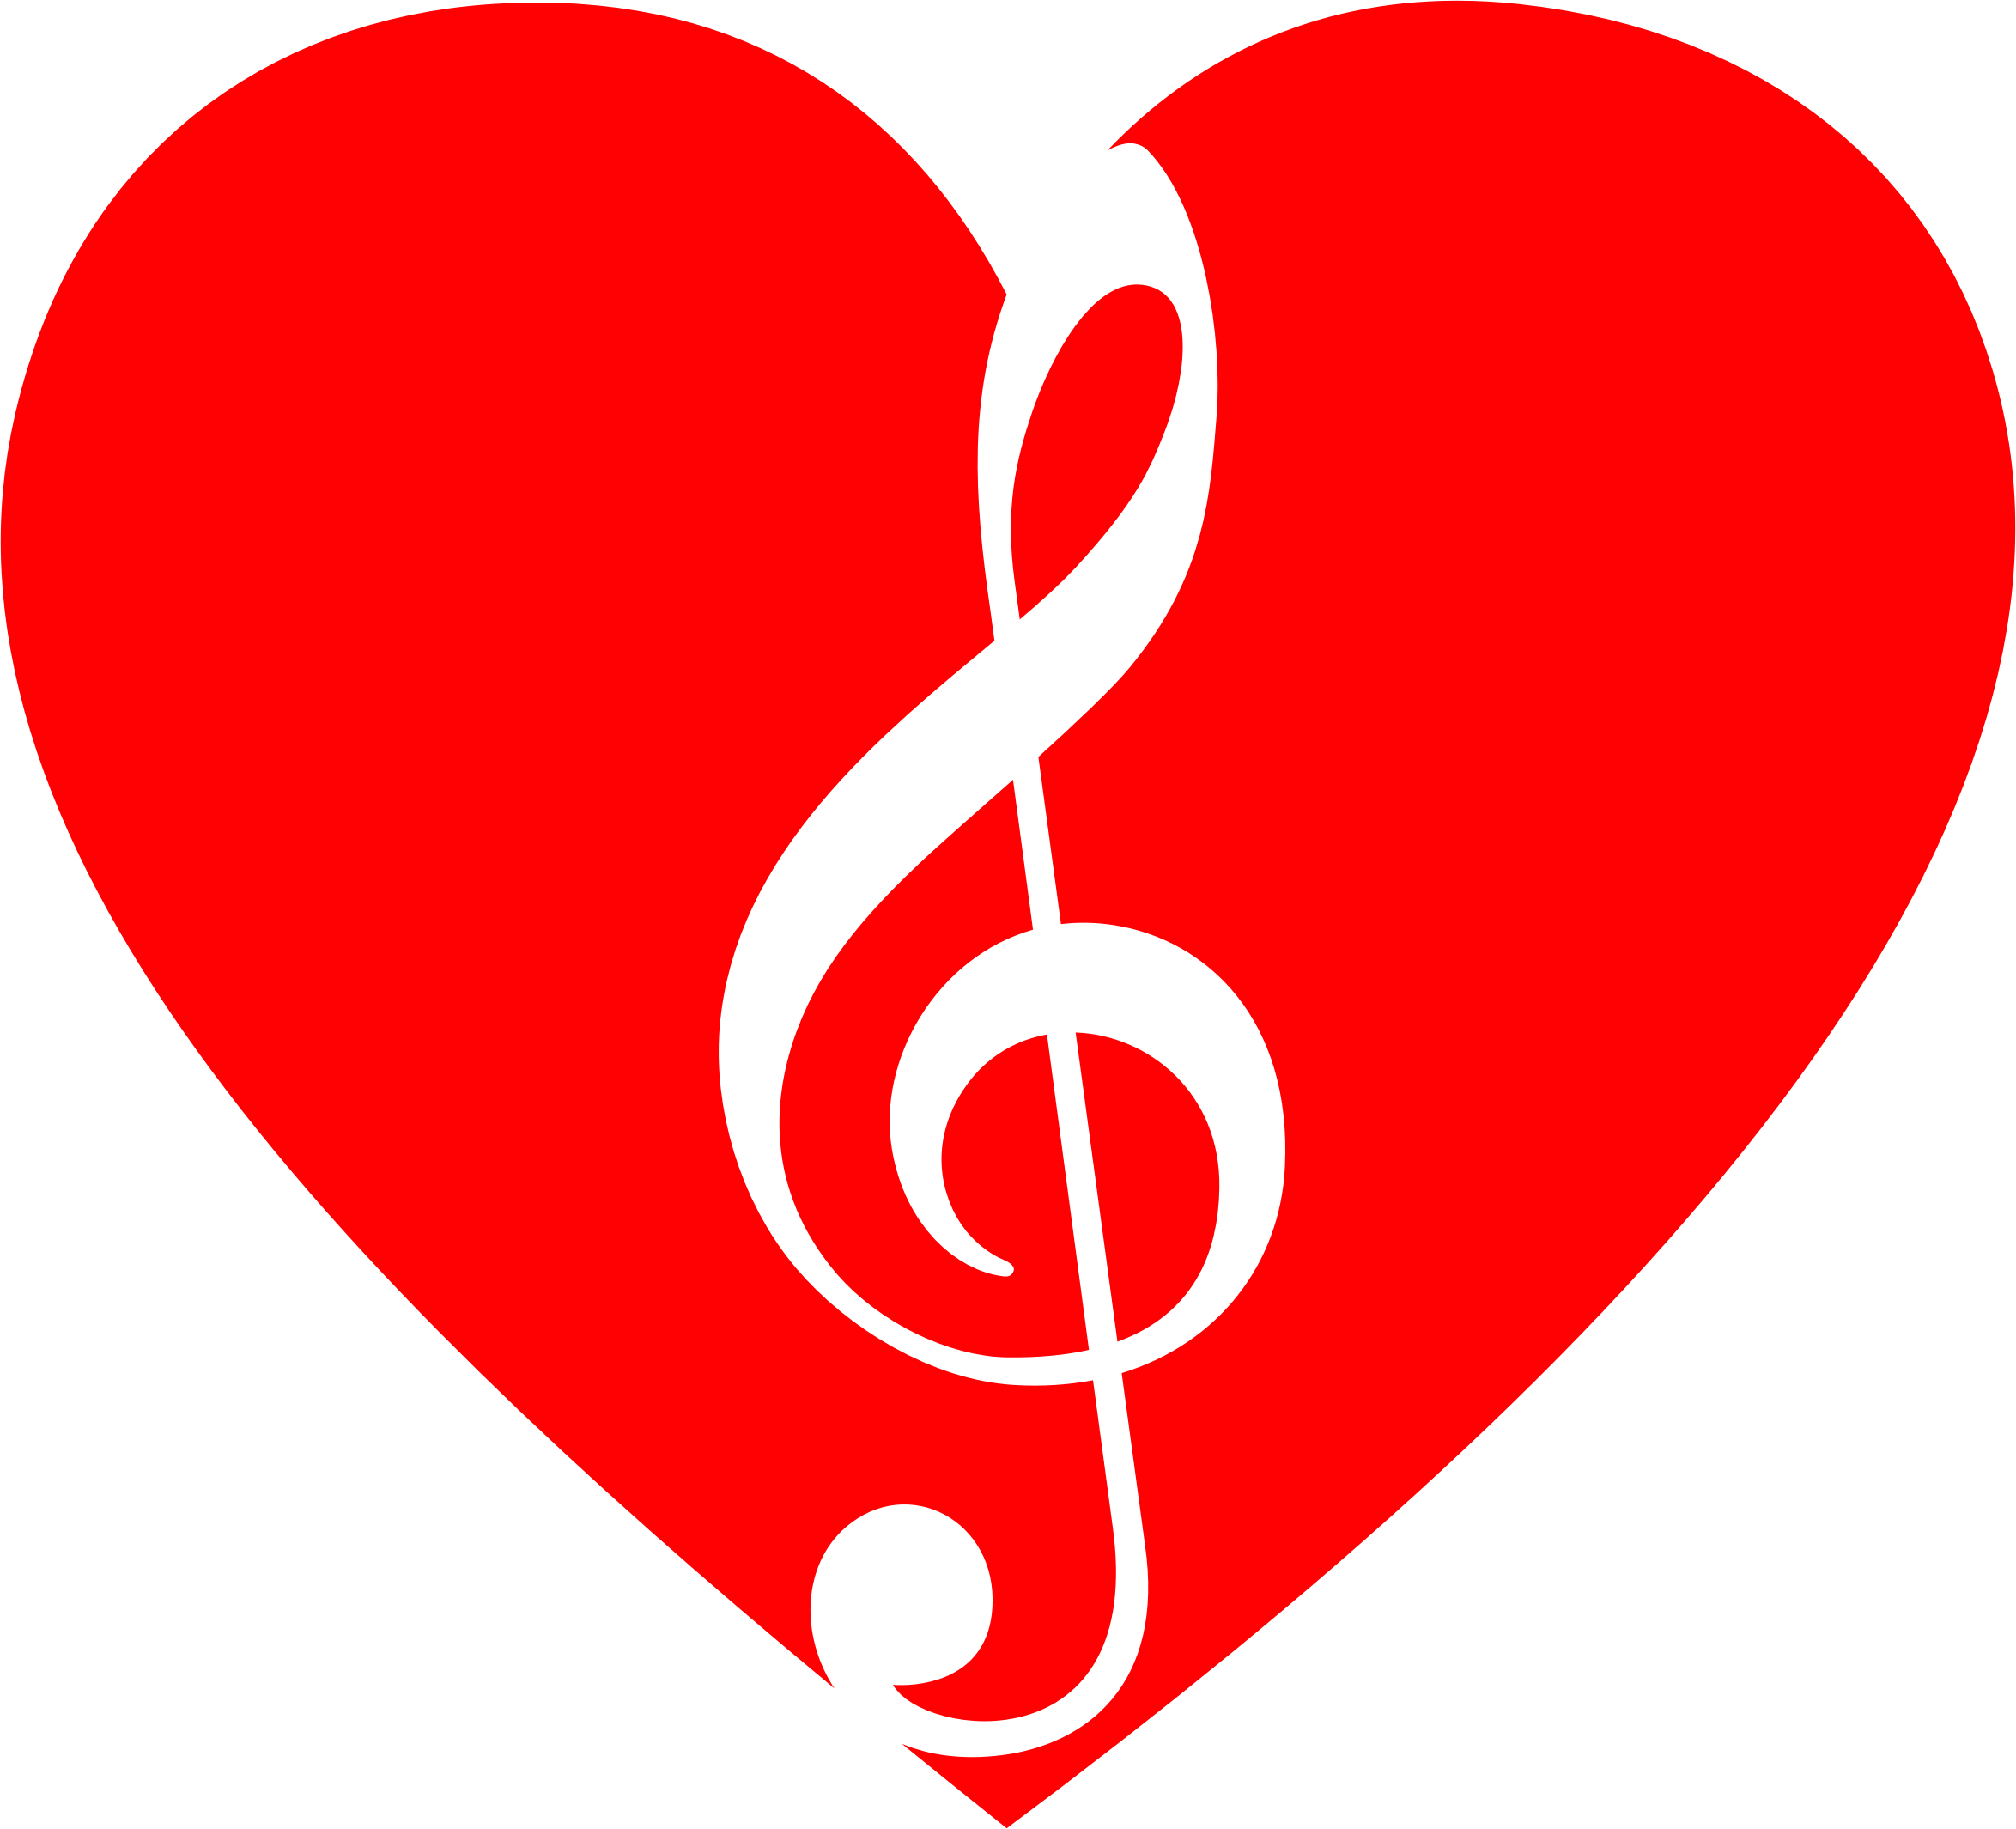 Clipart - Musical Heart 2